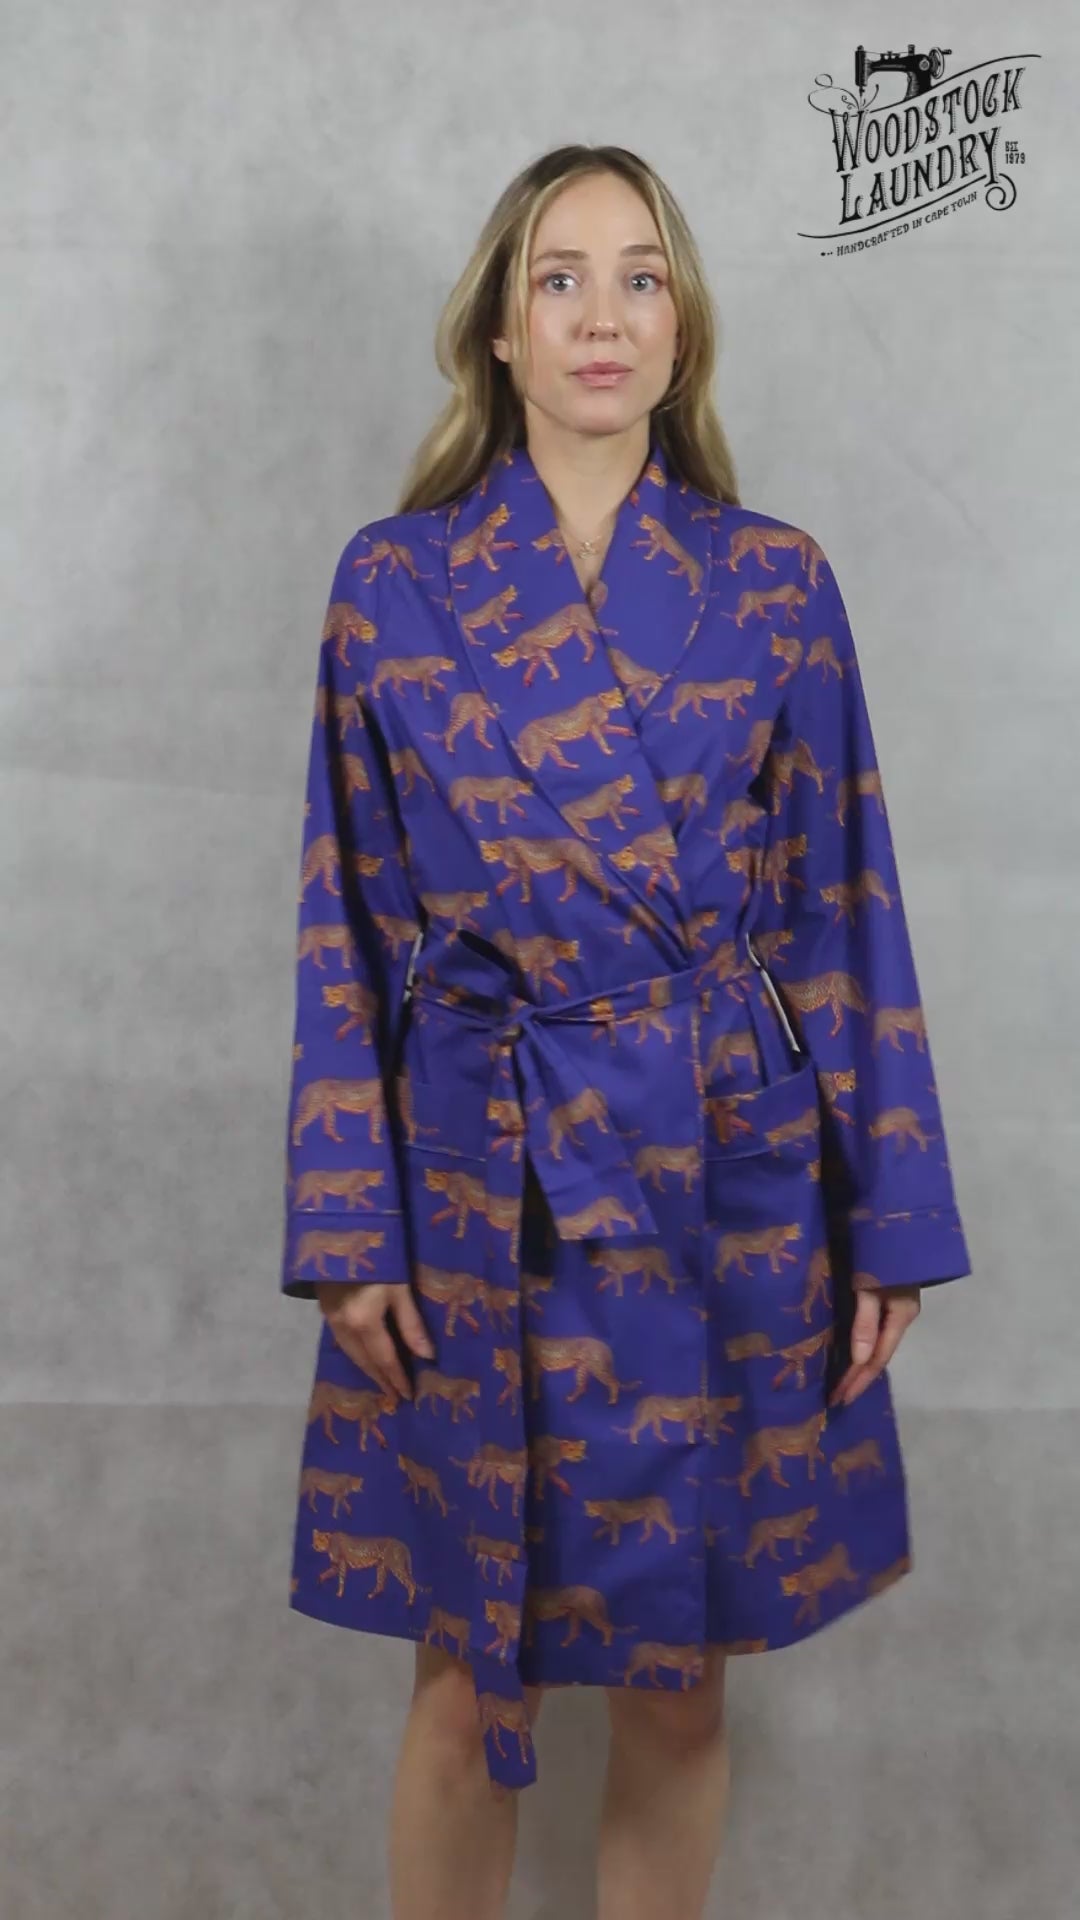 Womens dressing gown - blue cheetah